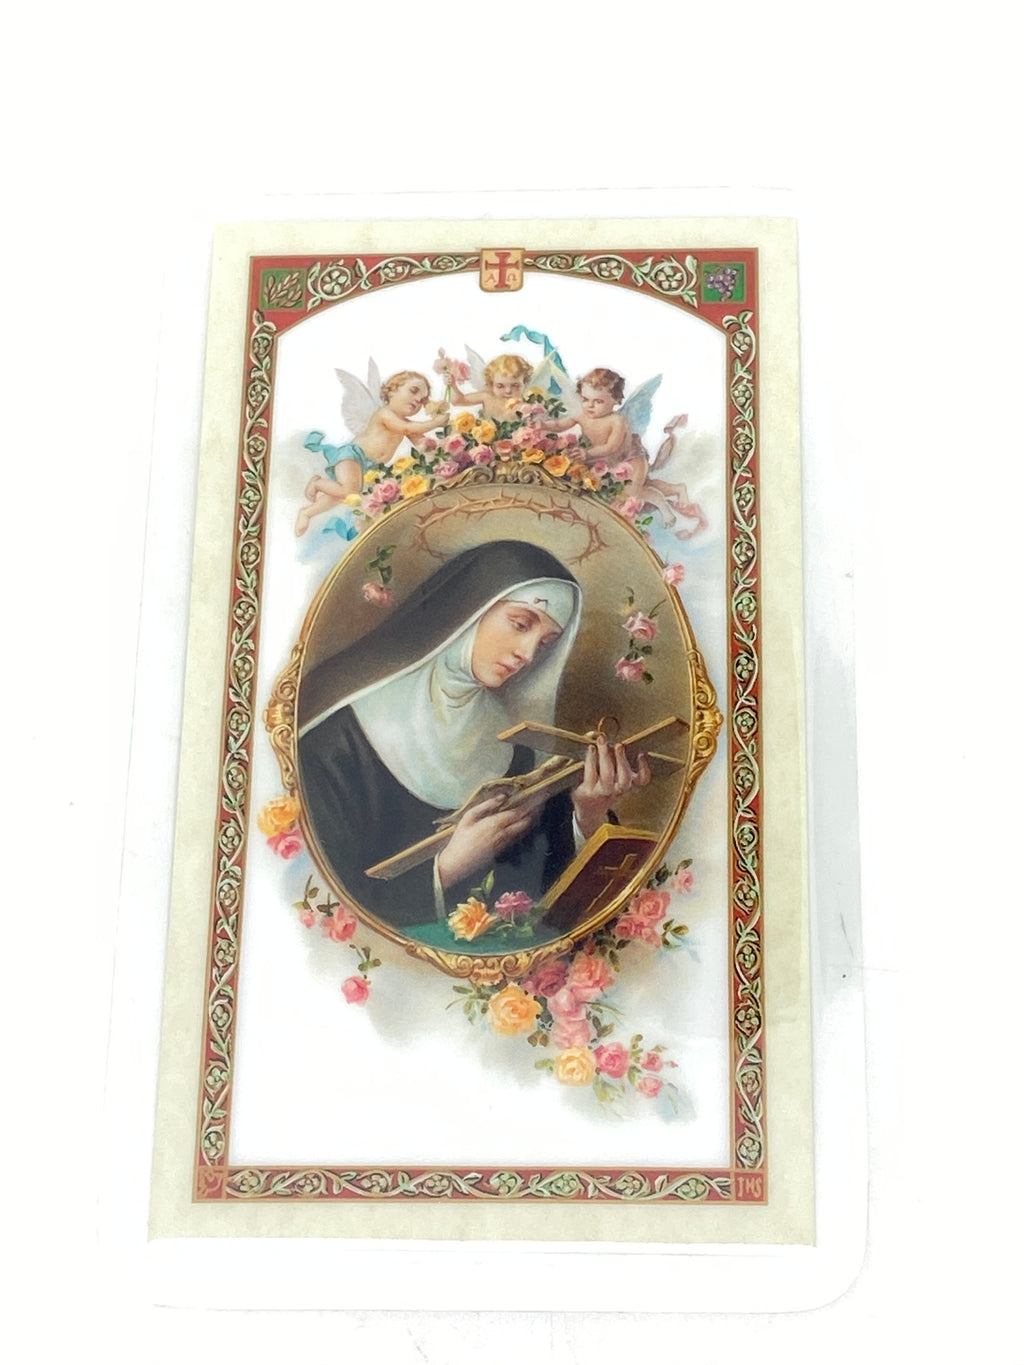 Santa Rita de Casia Tarjeta Sagrada laminada (Cubierta de Plástico) - Unique Catholic Gifts